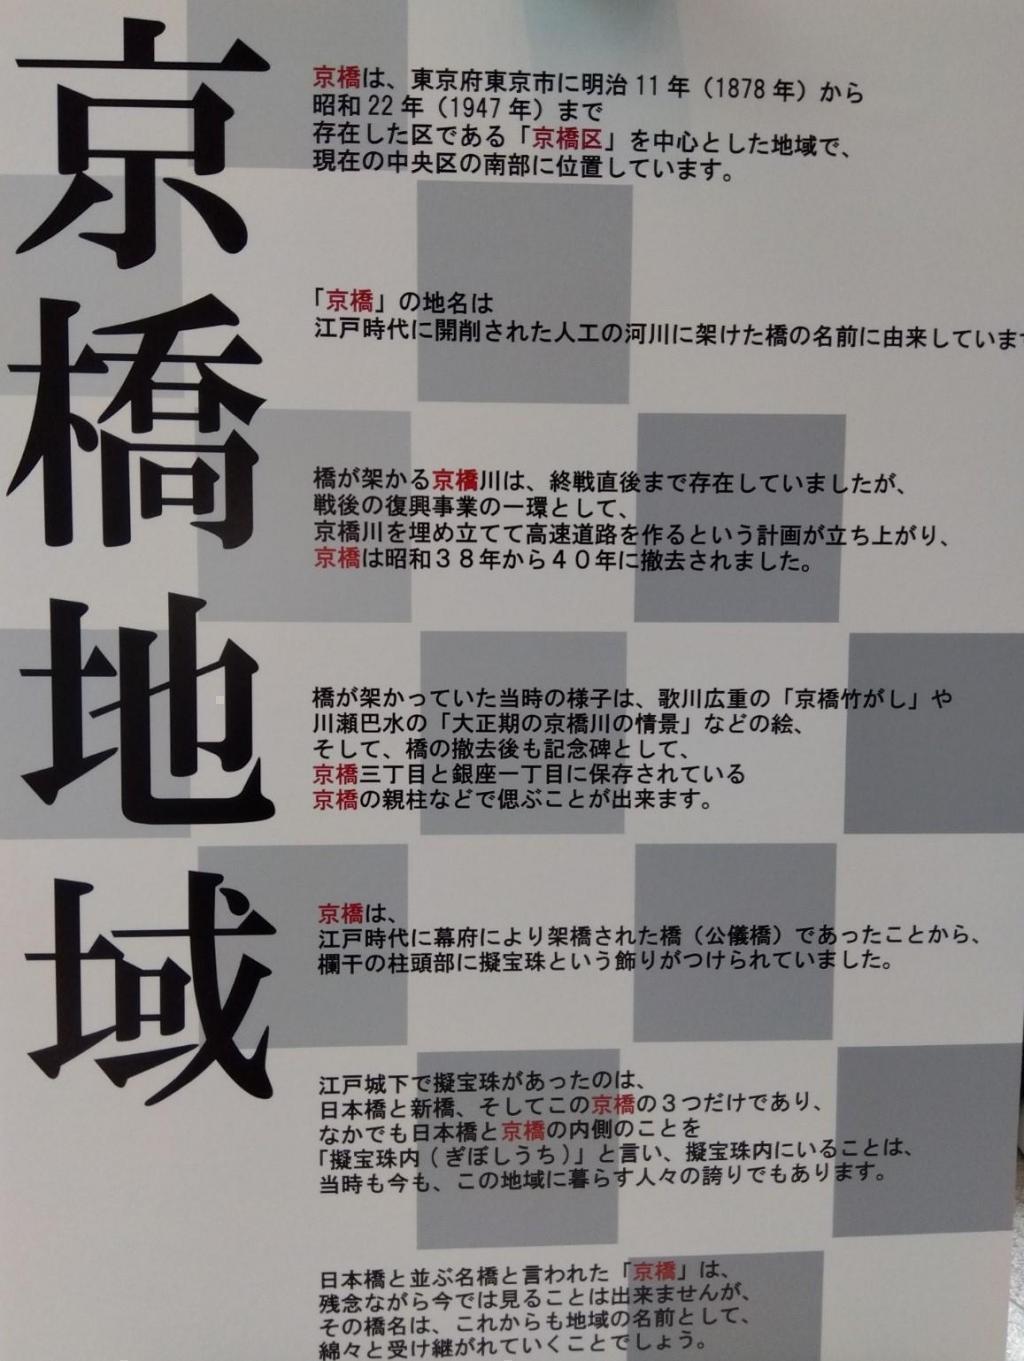 京橋地域の歴史を学びましょう 企画展示　京橋　ひと・こと・とき(刻)つなぎ　2023・初夏

